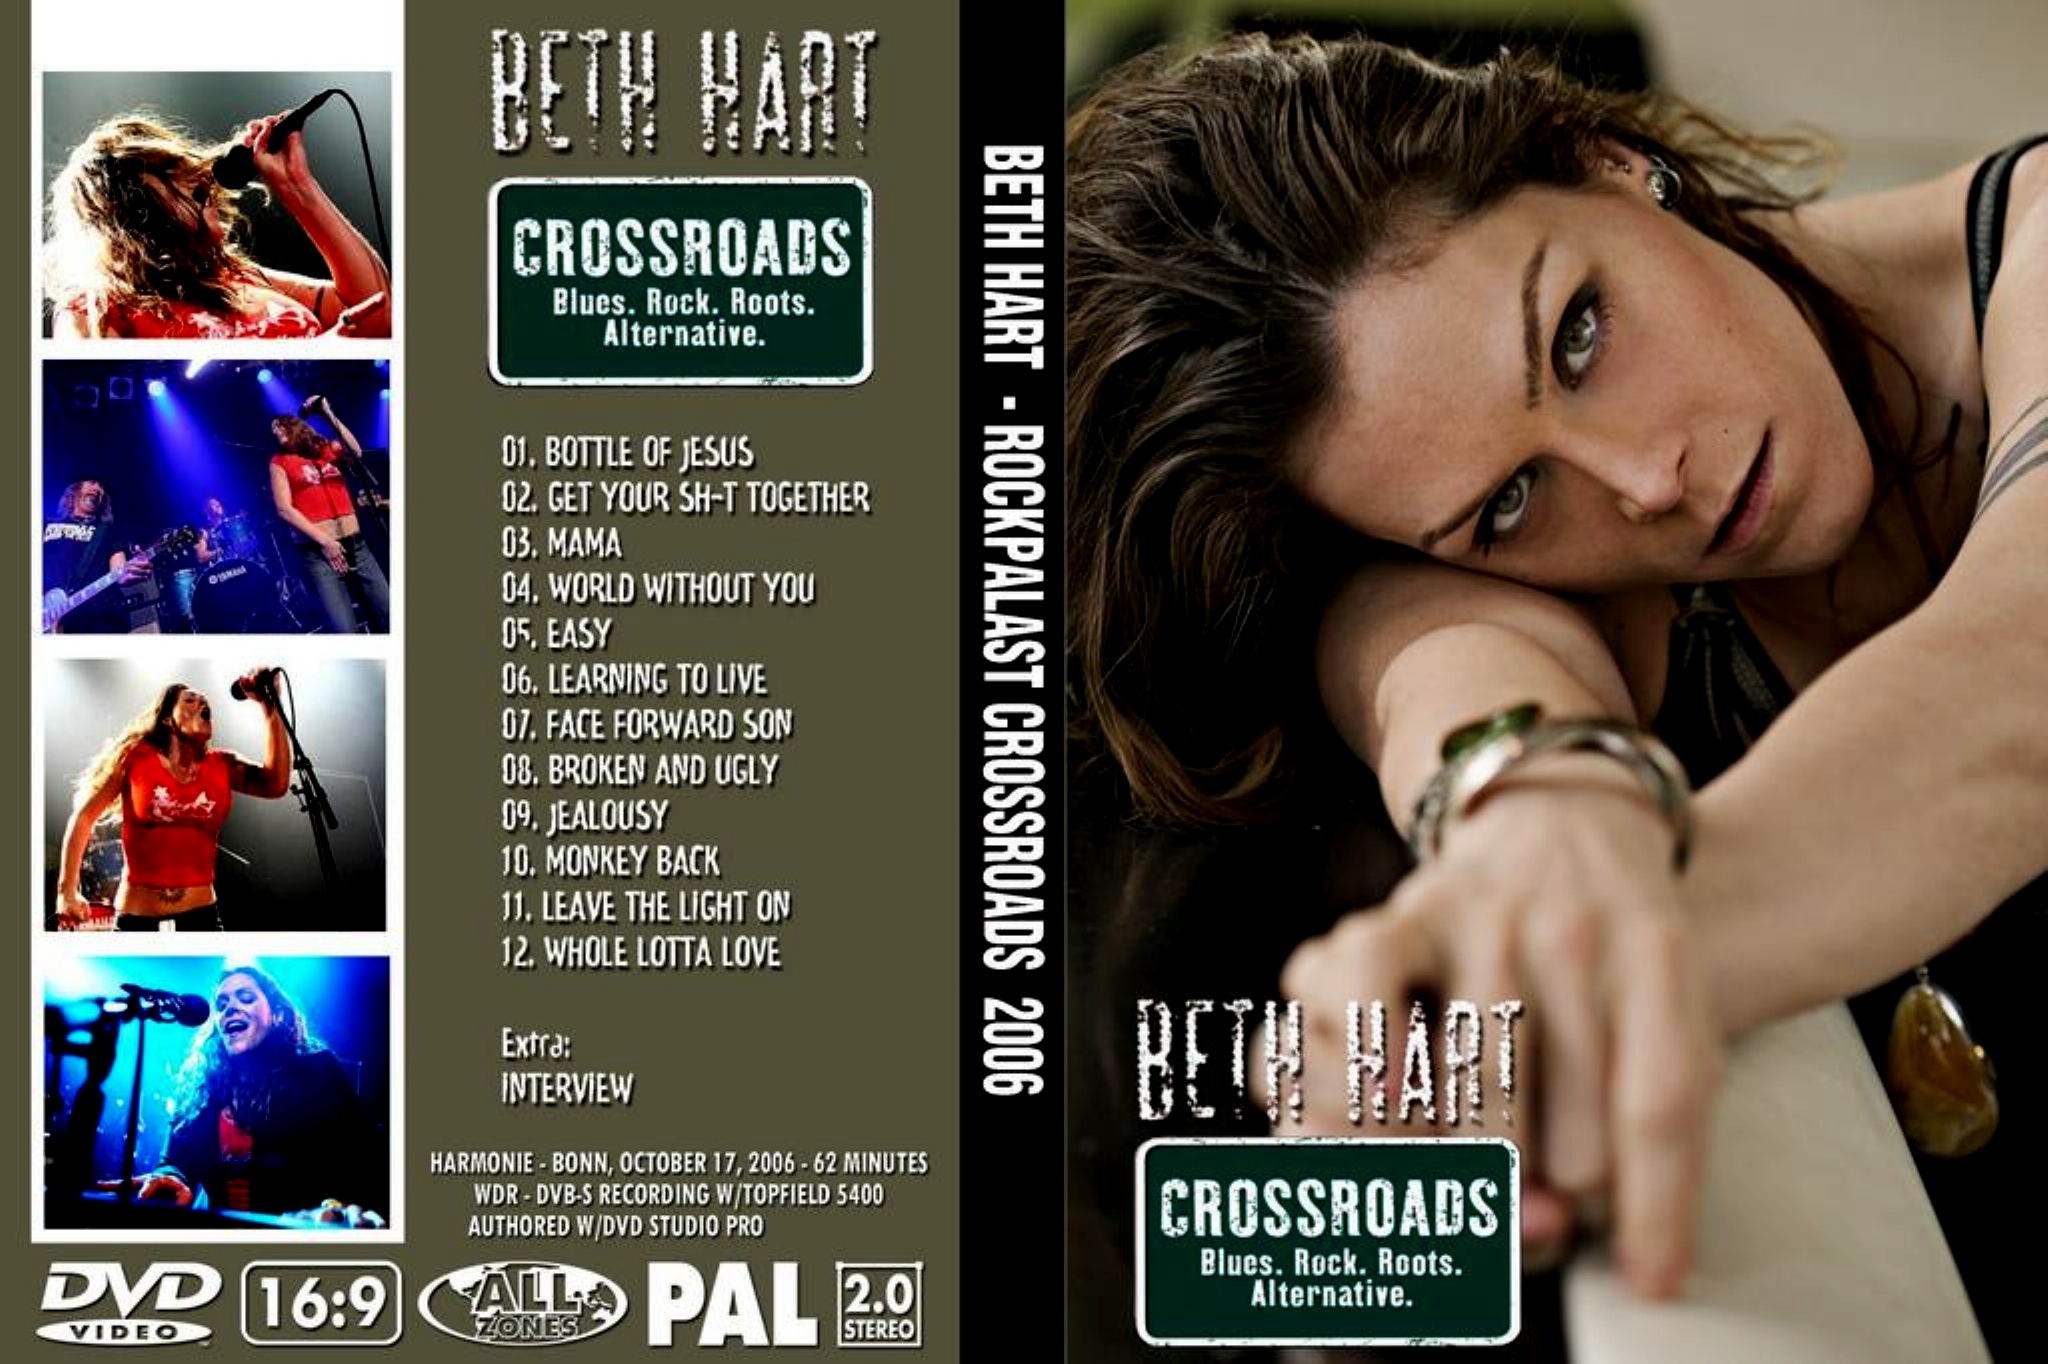 Beth Hart -Grossroads